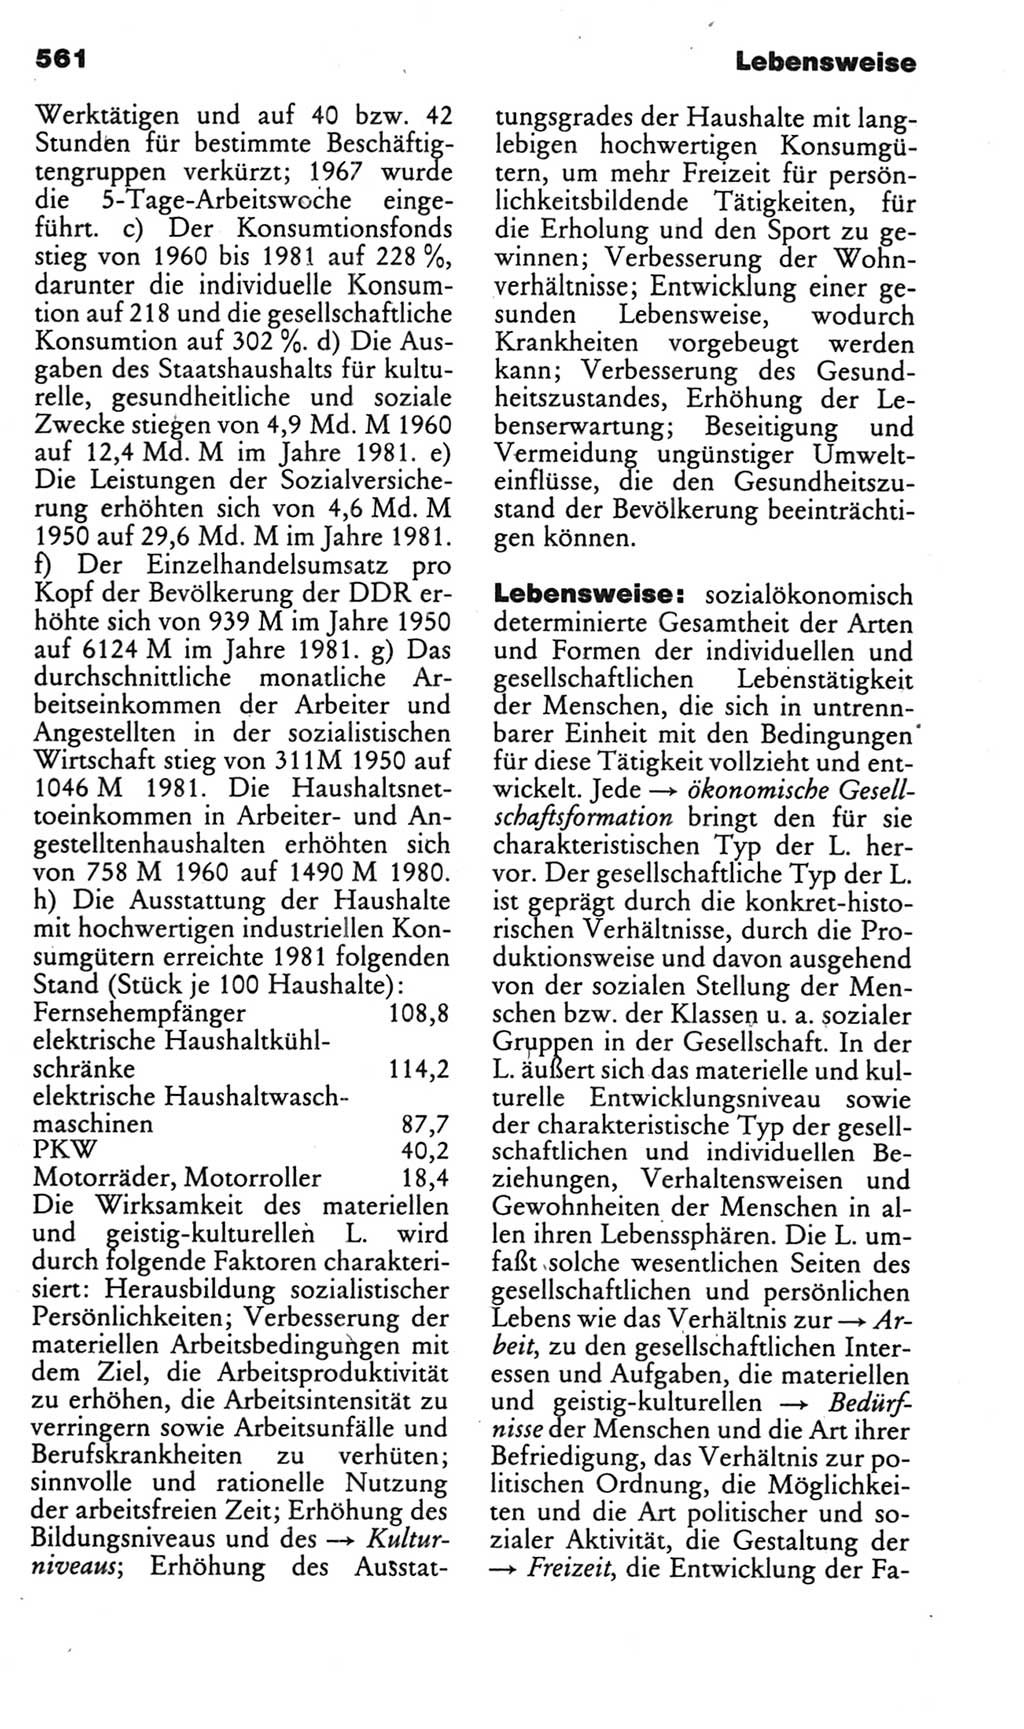 Kleines politisches Wörterbuch [Deutsche Demokratische Republik (DDR)] 1985, Seite 561 (Kl. pol. Wb. DDR 1985, S. 561)